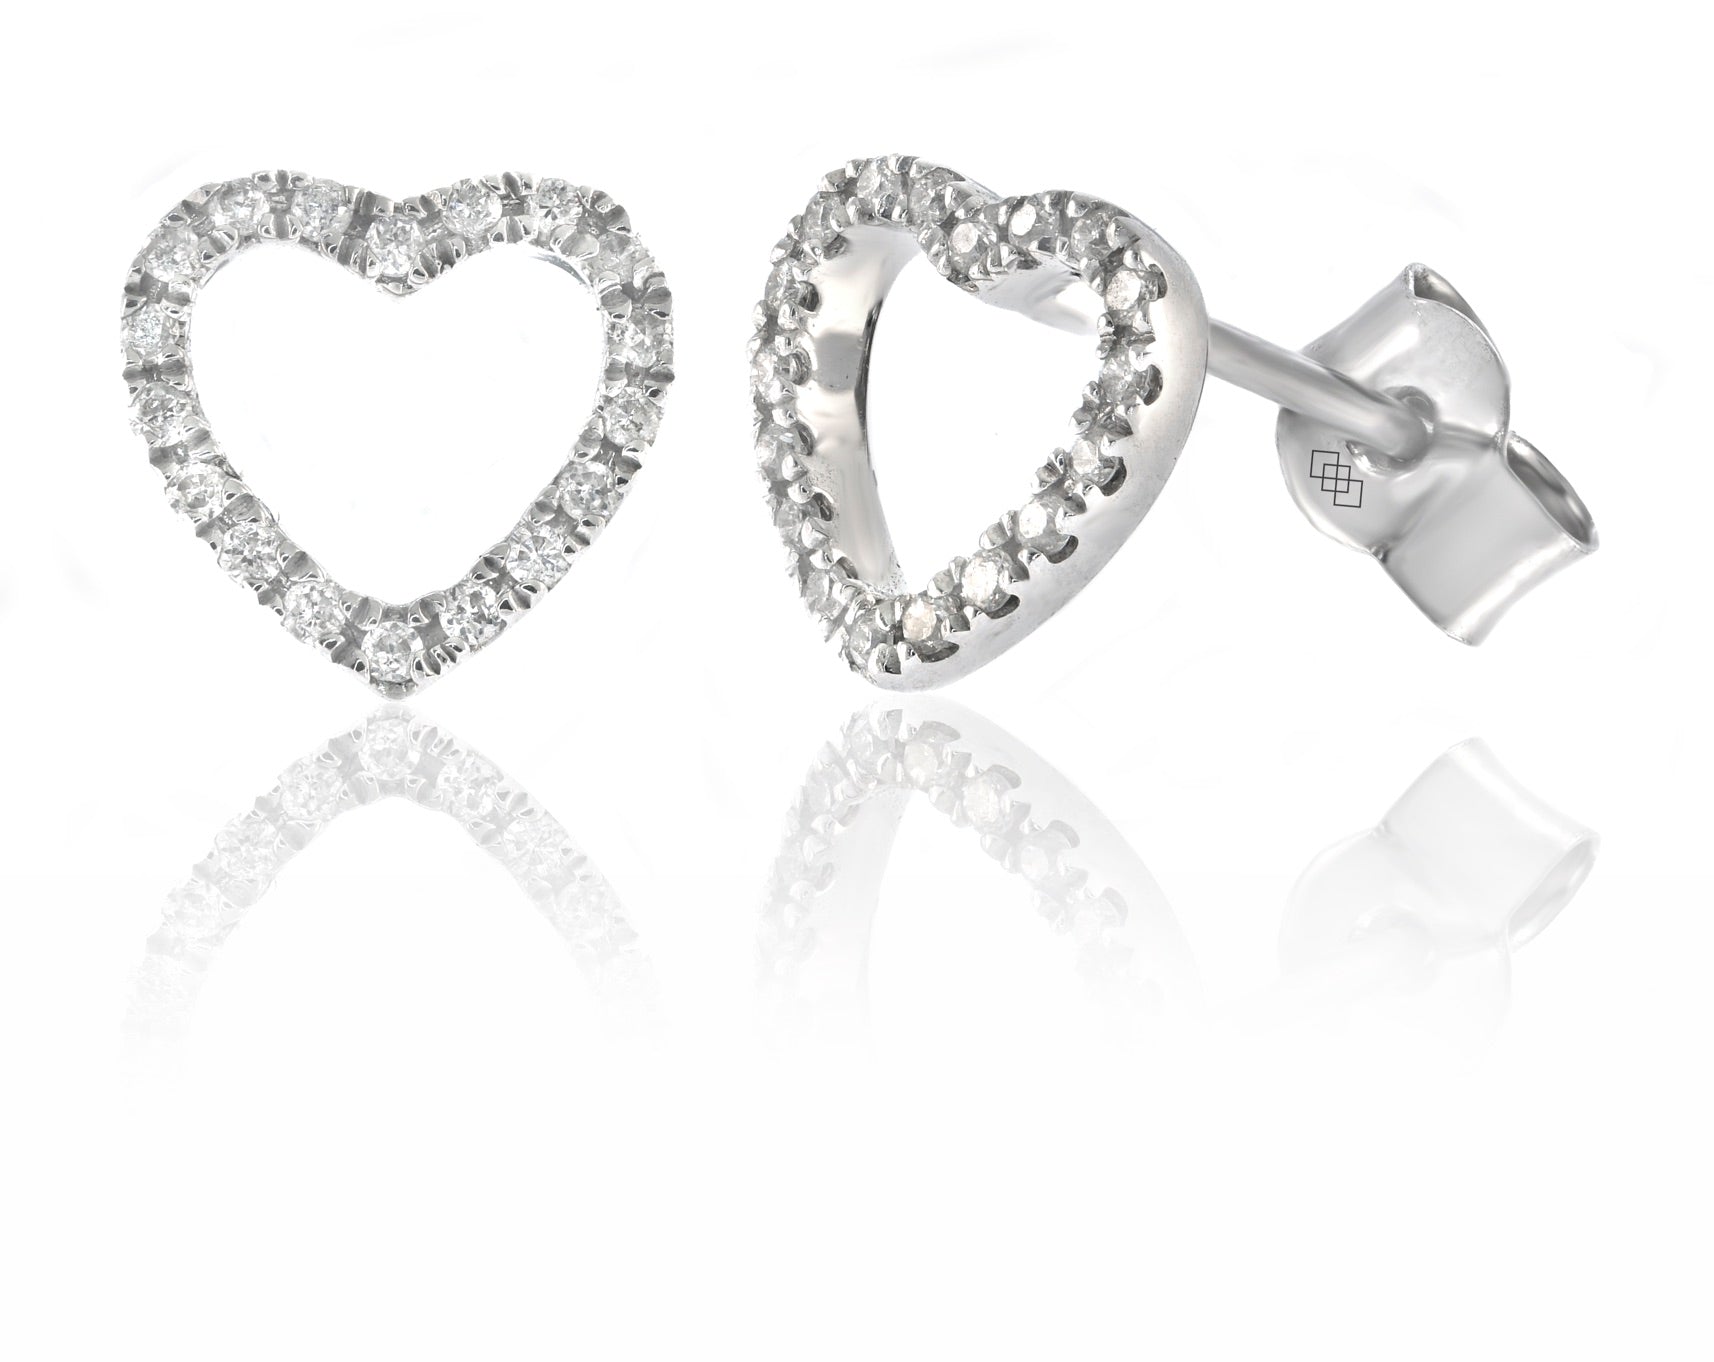 Earrings - Diamond Heart Silhouette Stud Earrings